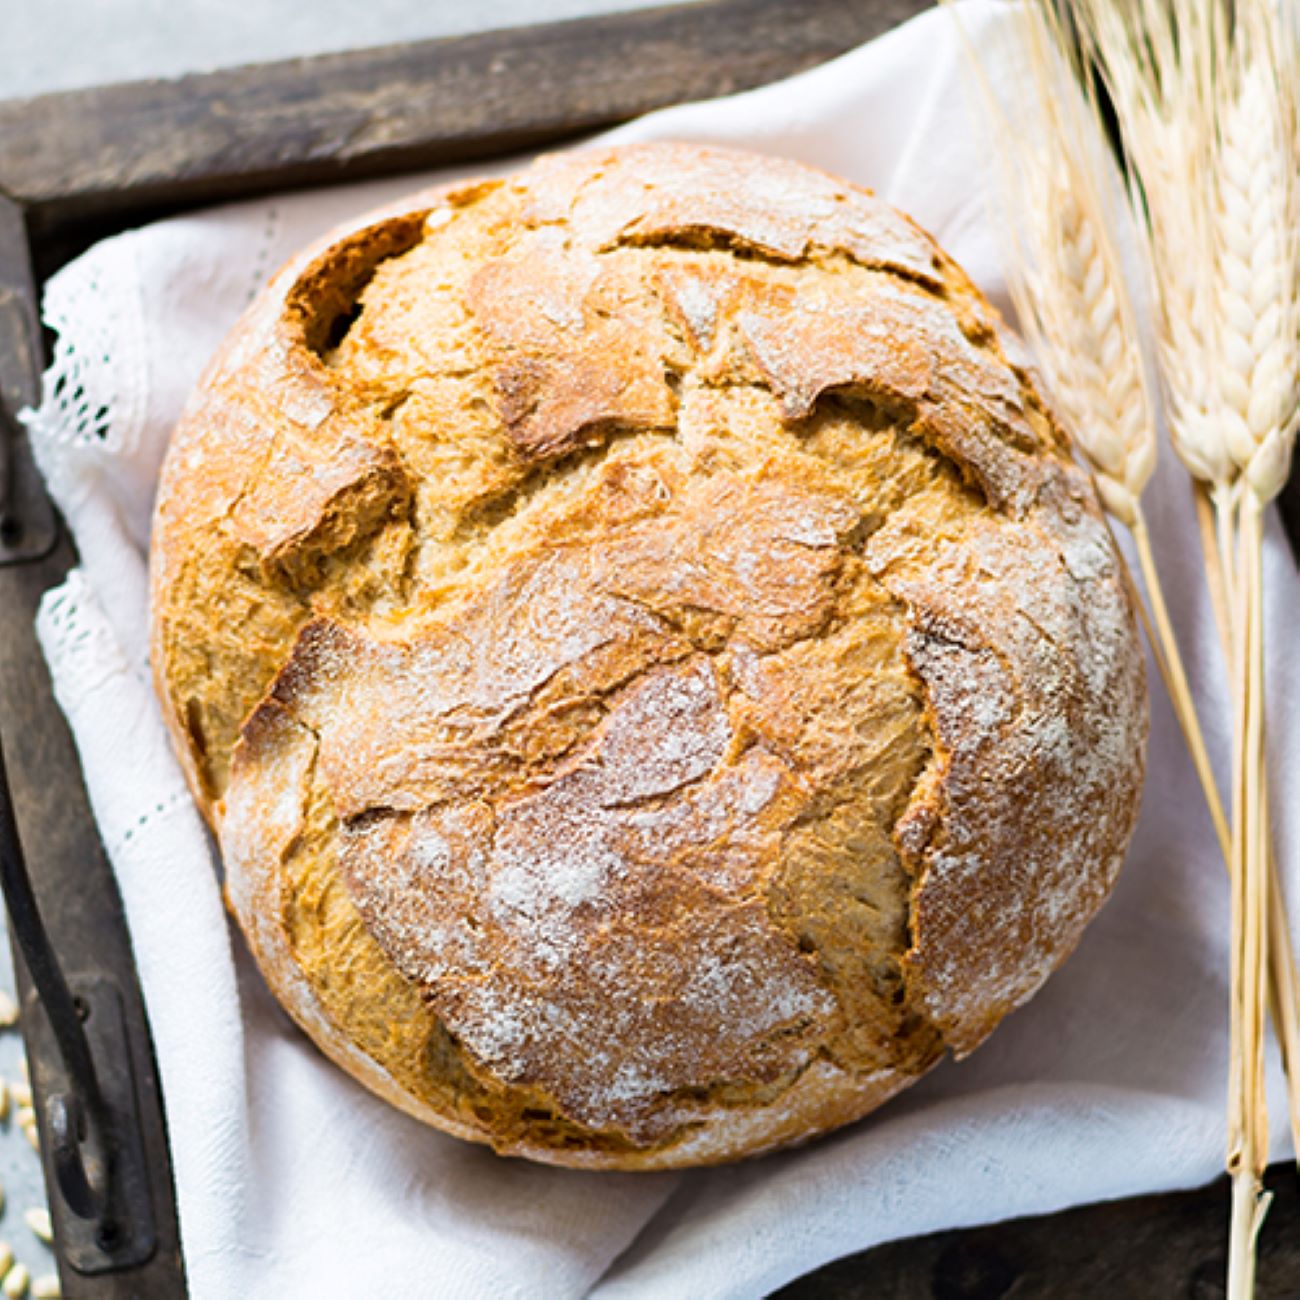 Pšenični kruh je prikazan od zgoraj na beli tkanini in okrašen s pšenico.